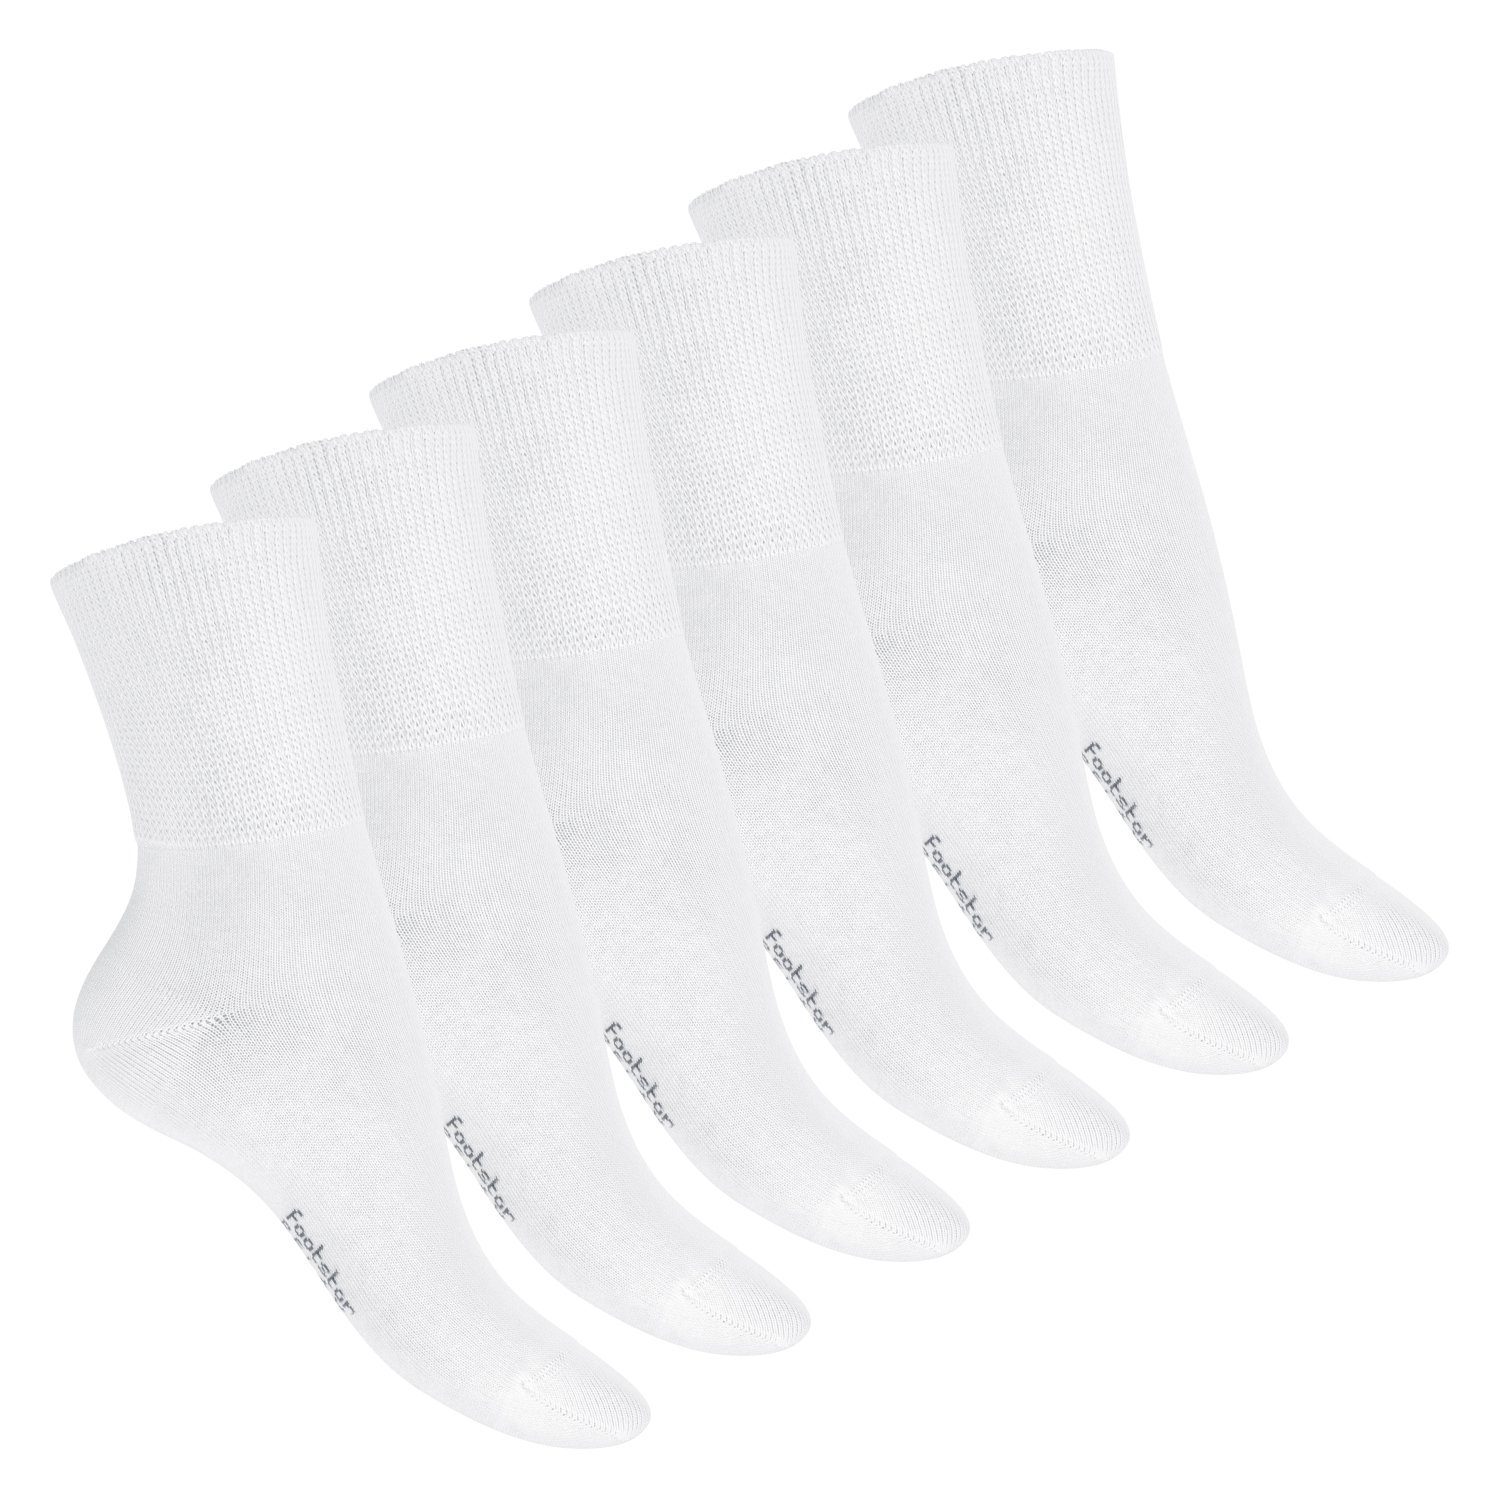 Footstar Gesundheitssocken Gesundheits Diabetiker Socken für Damen & Herren (6 Paar) Weiss